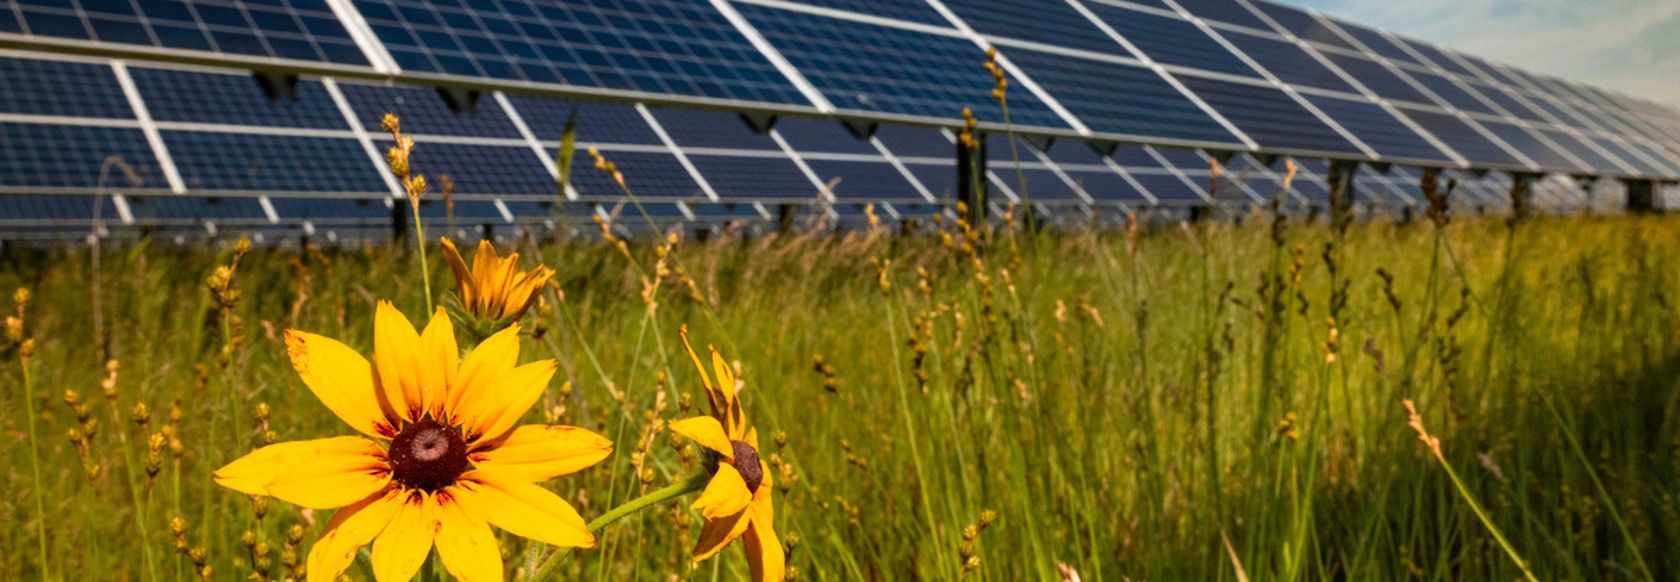 Pulita e accessibile: l'energia solare spinge la transizione green